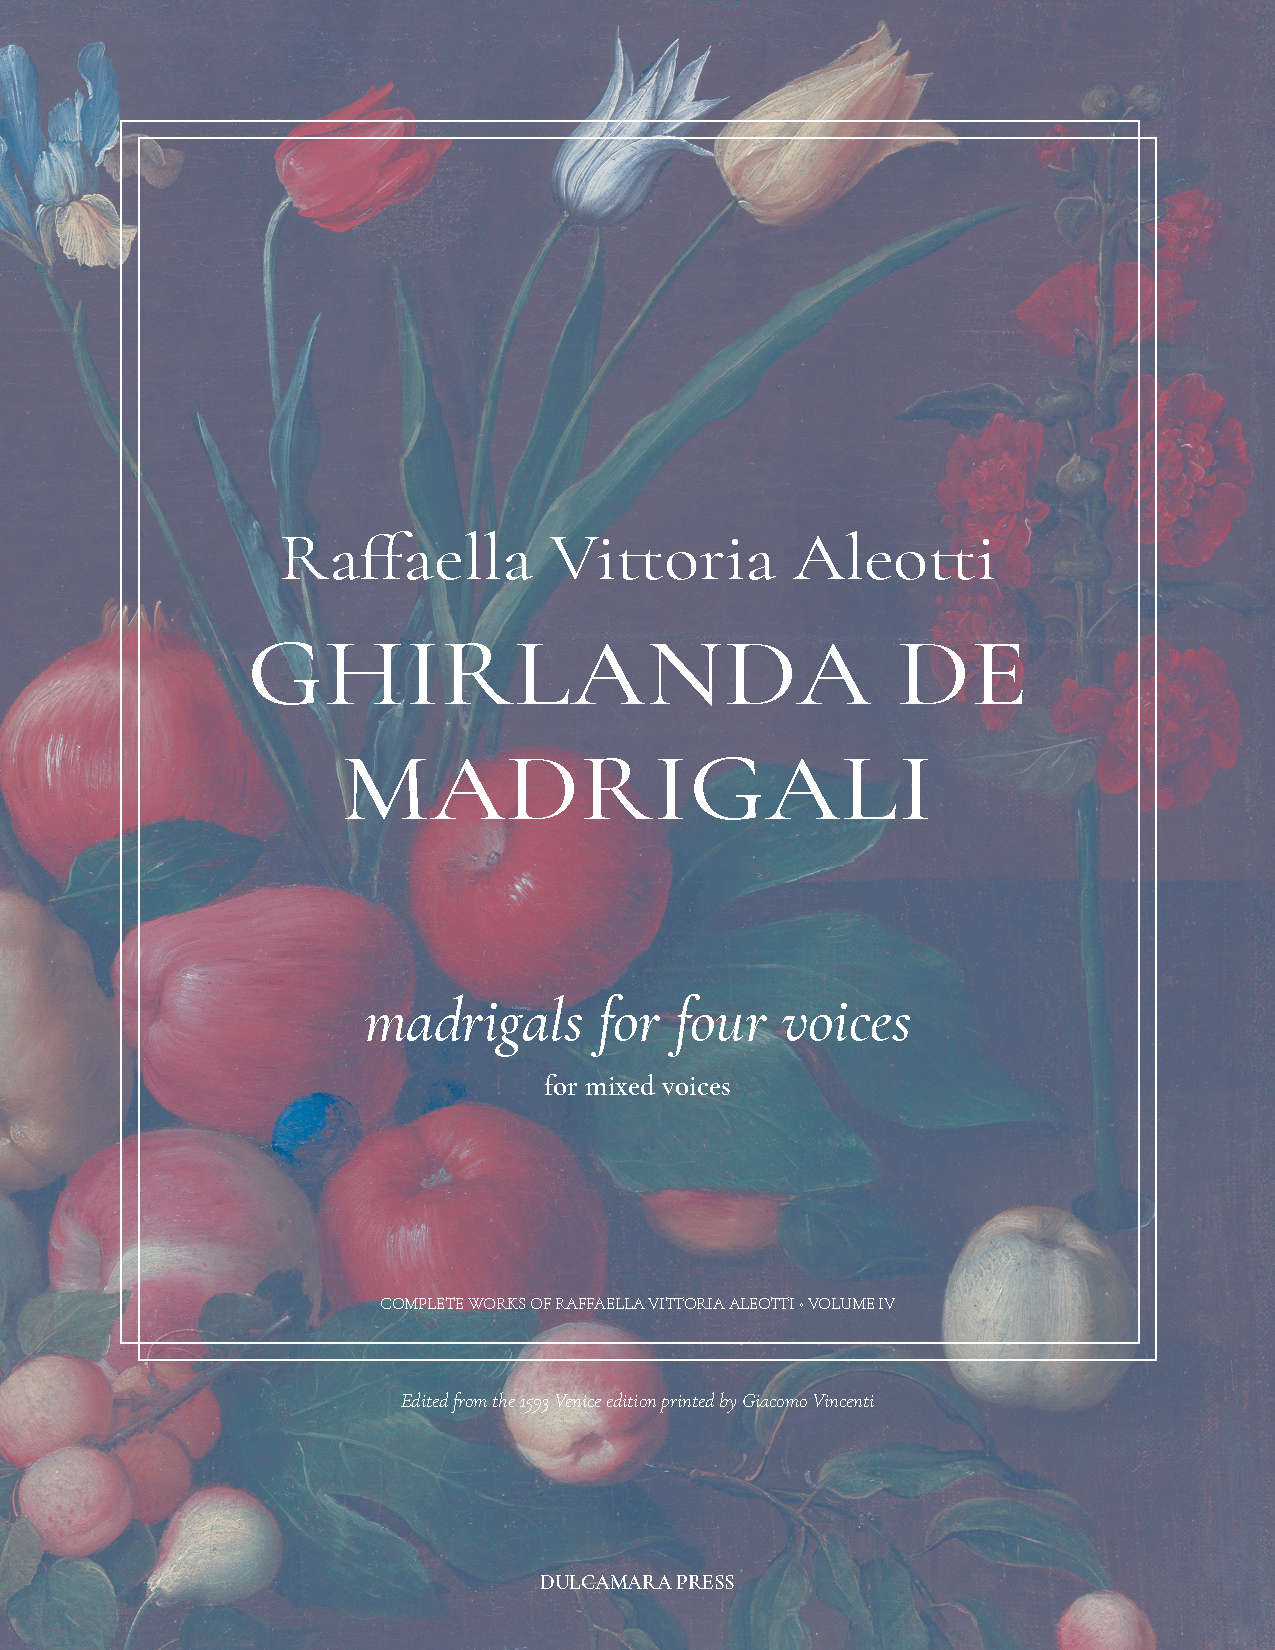 cover image for Raffaella Vittoria Aleotti Ghirlanda de Madrigali, volume 4.